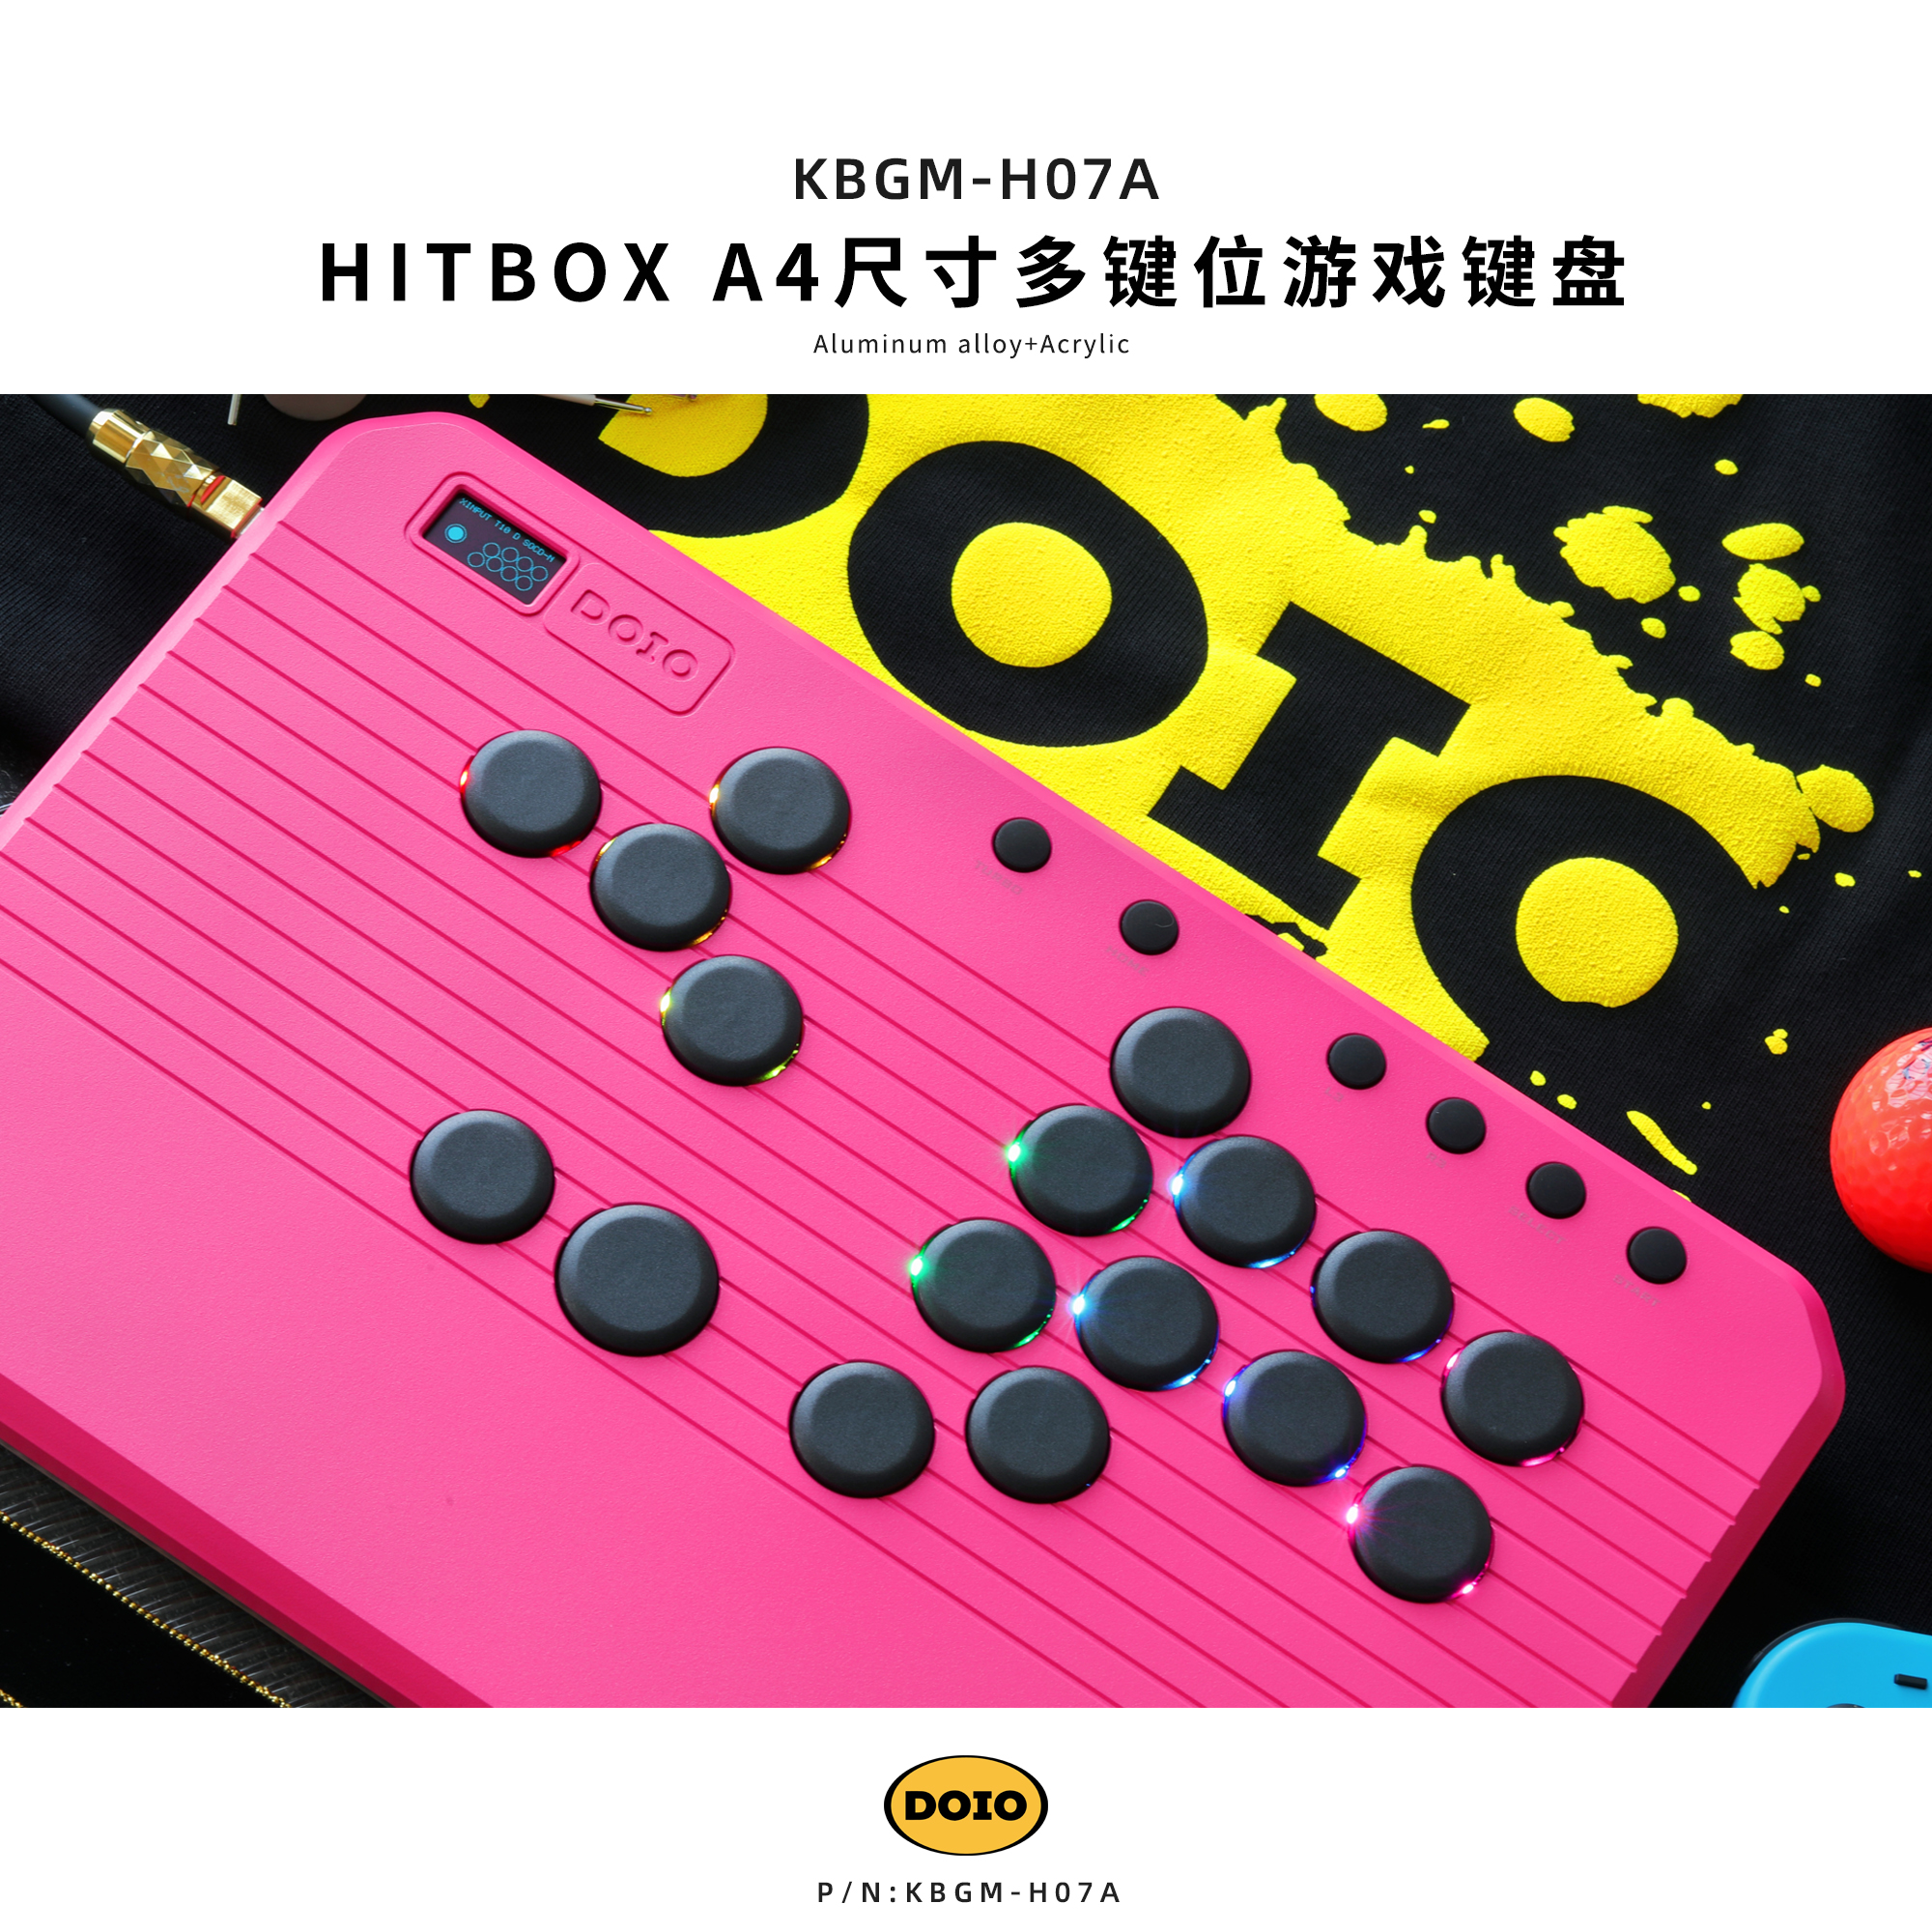 HITBOX 铝合金游戏键盘 